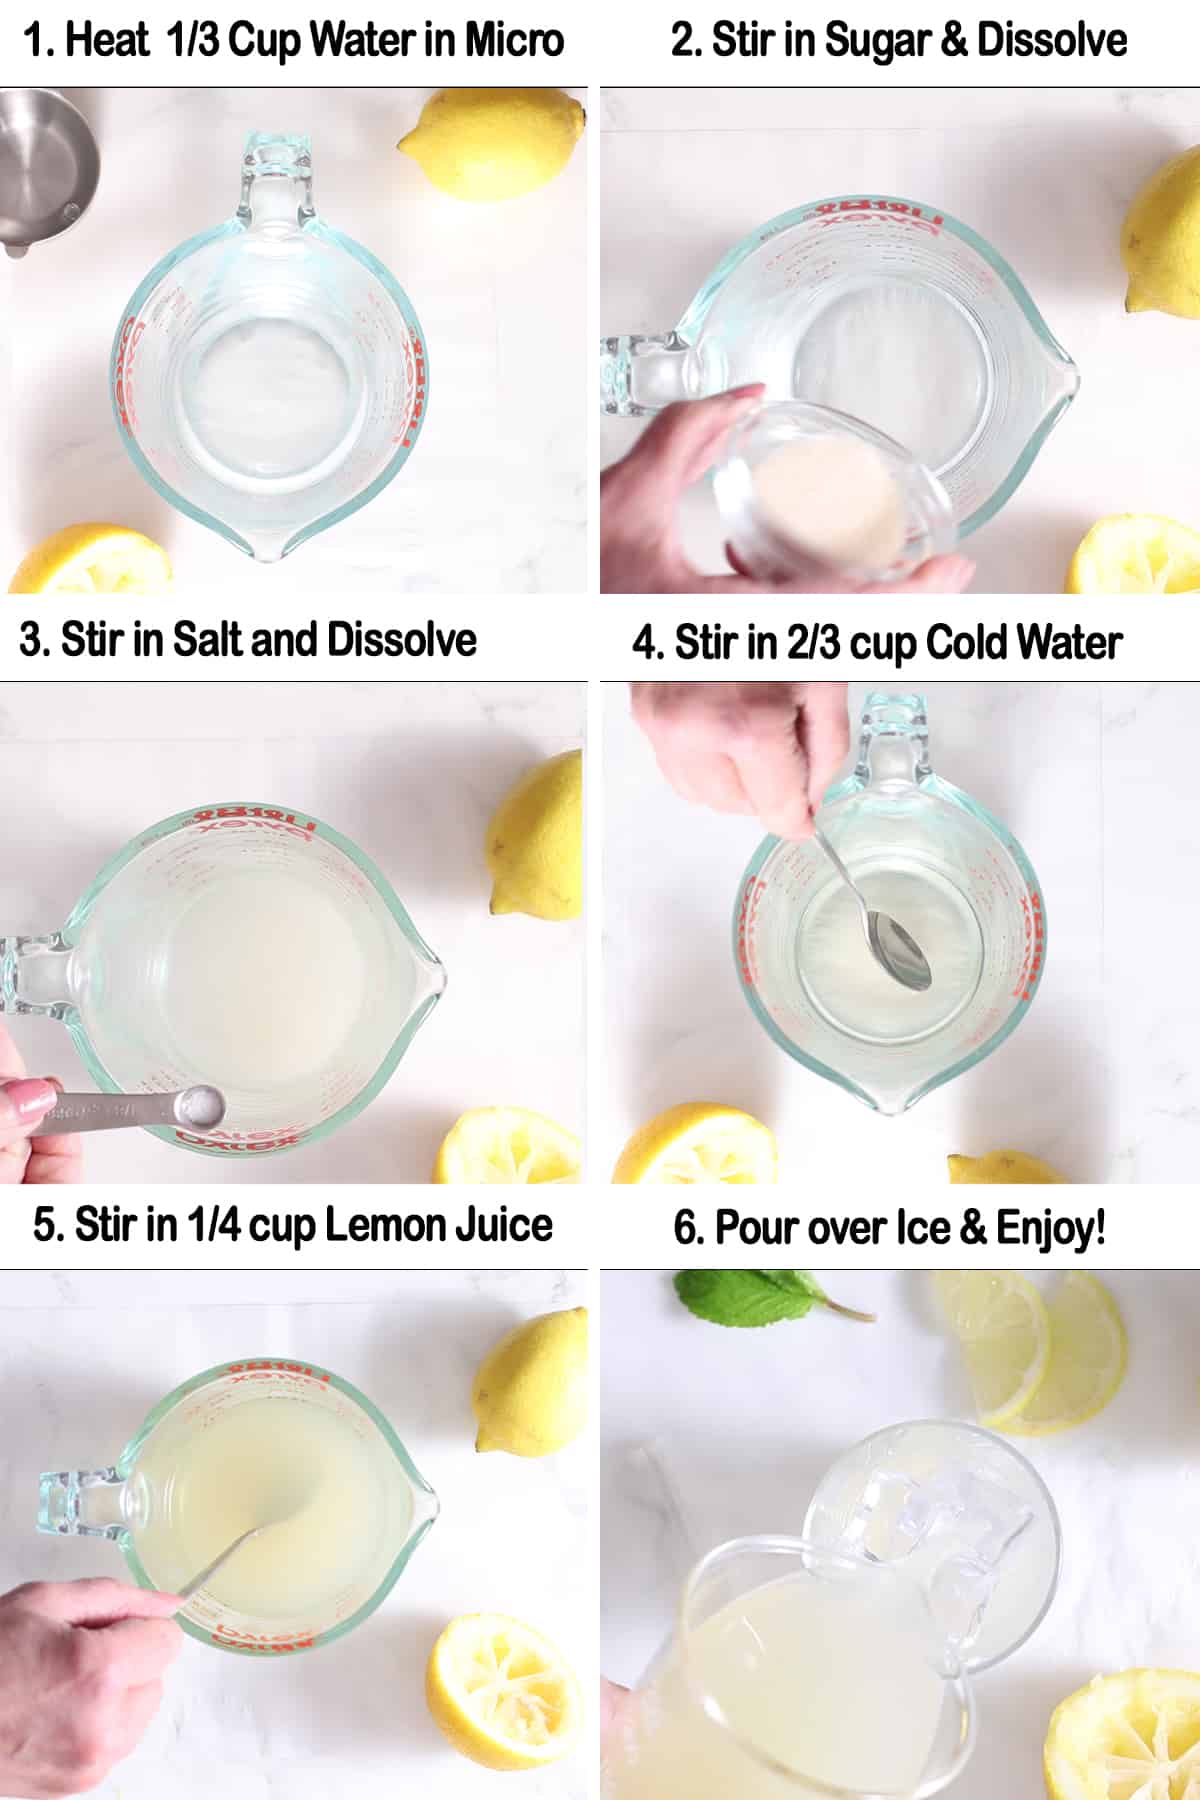 Passaggi per preparare una singola porzione di limonata